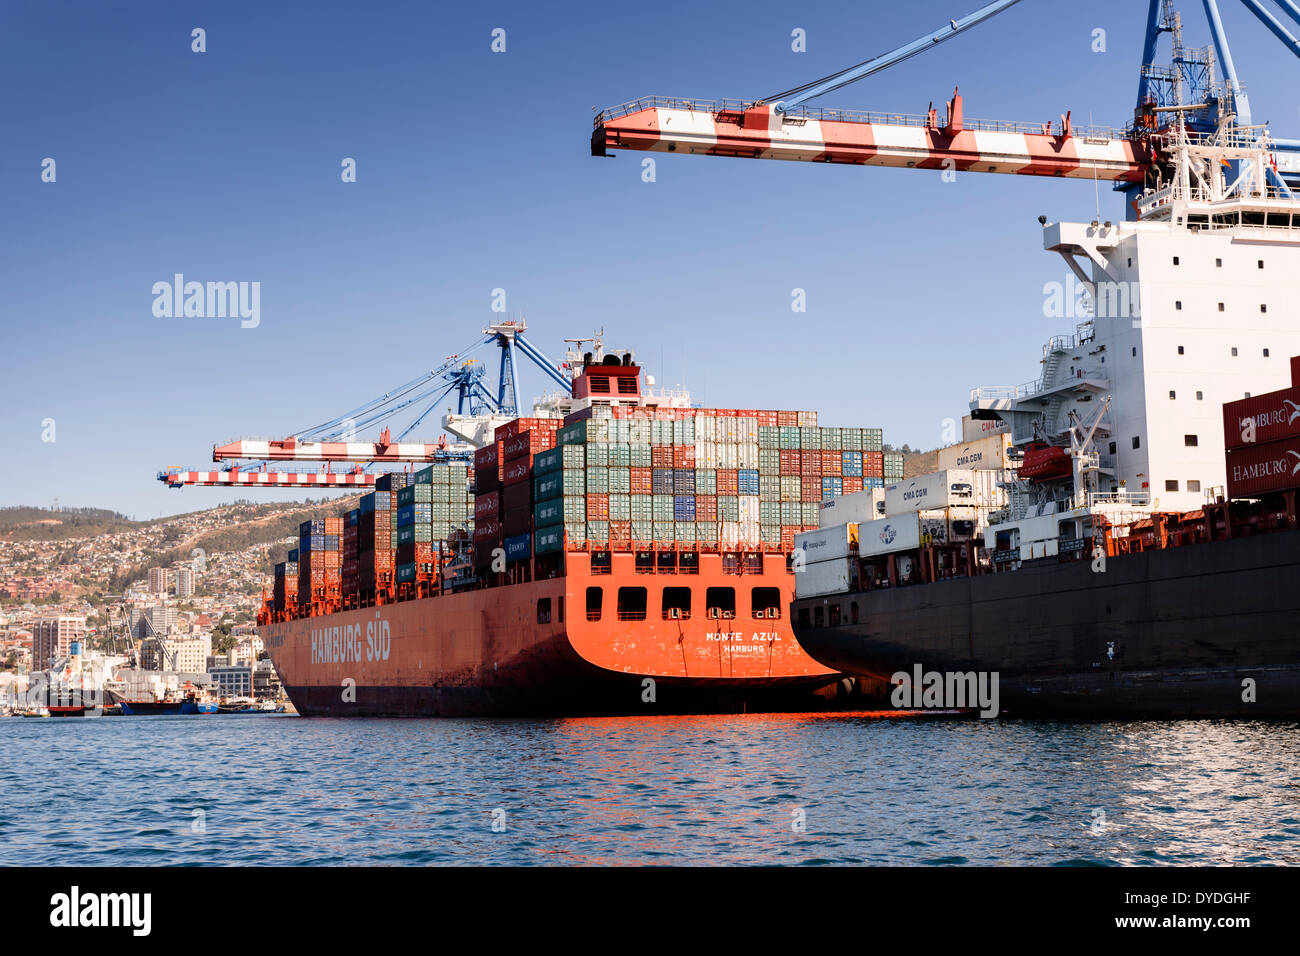 The busy docks of Valparaiso. Stock Photo